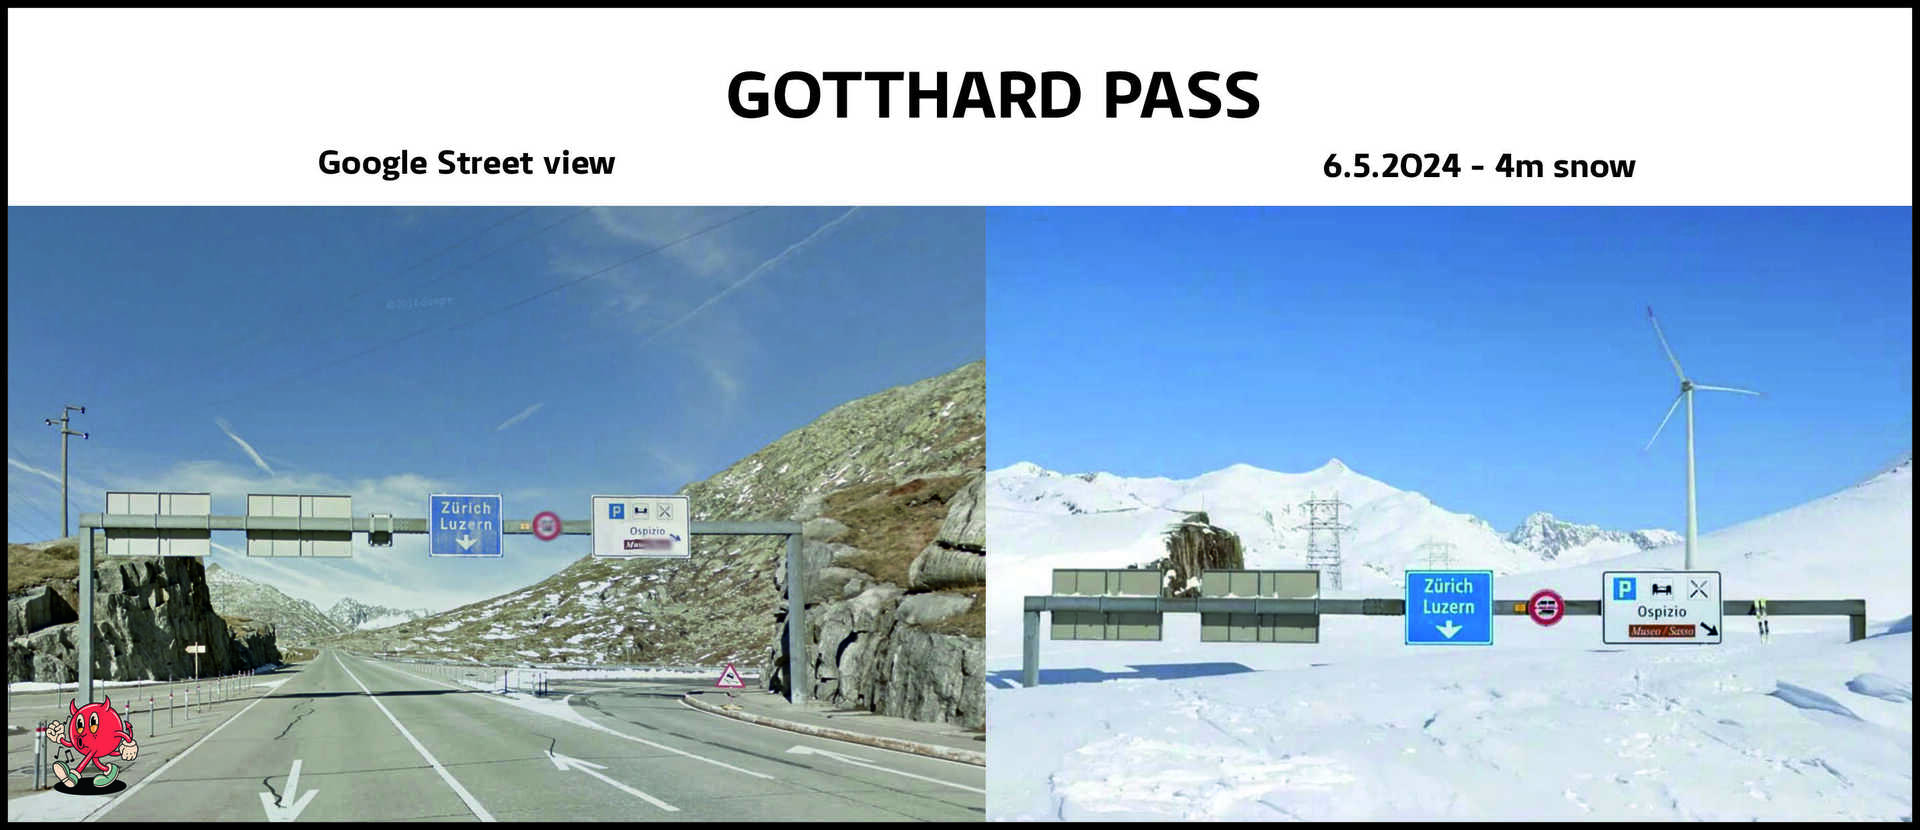 Gothard Pass